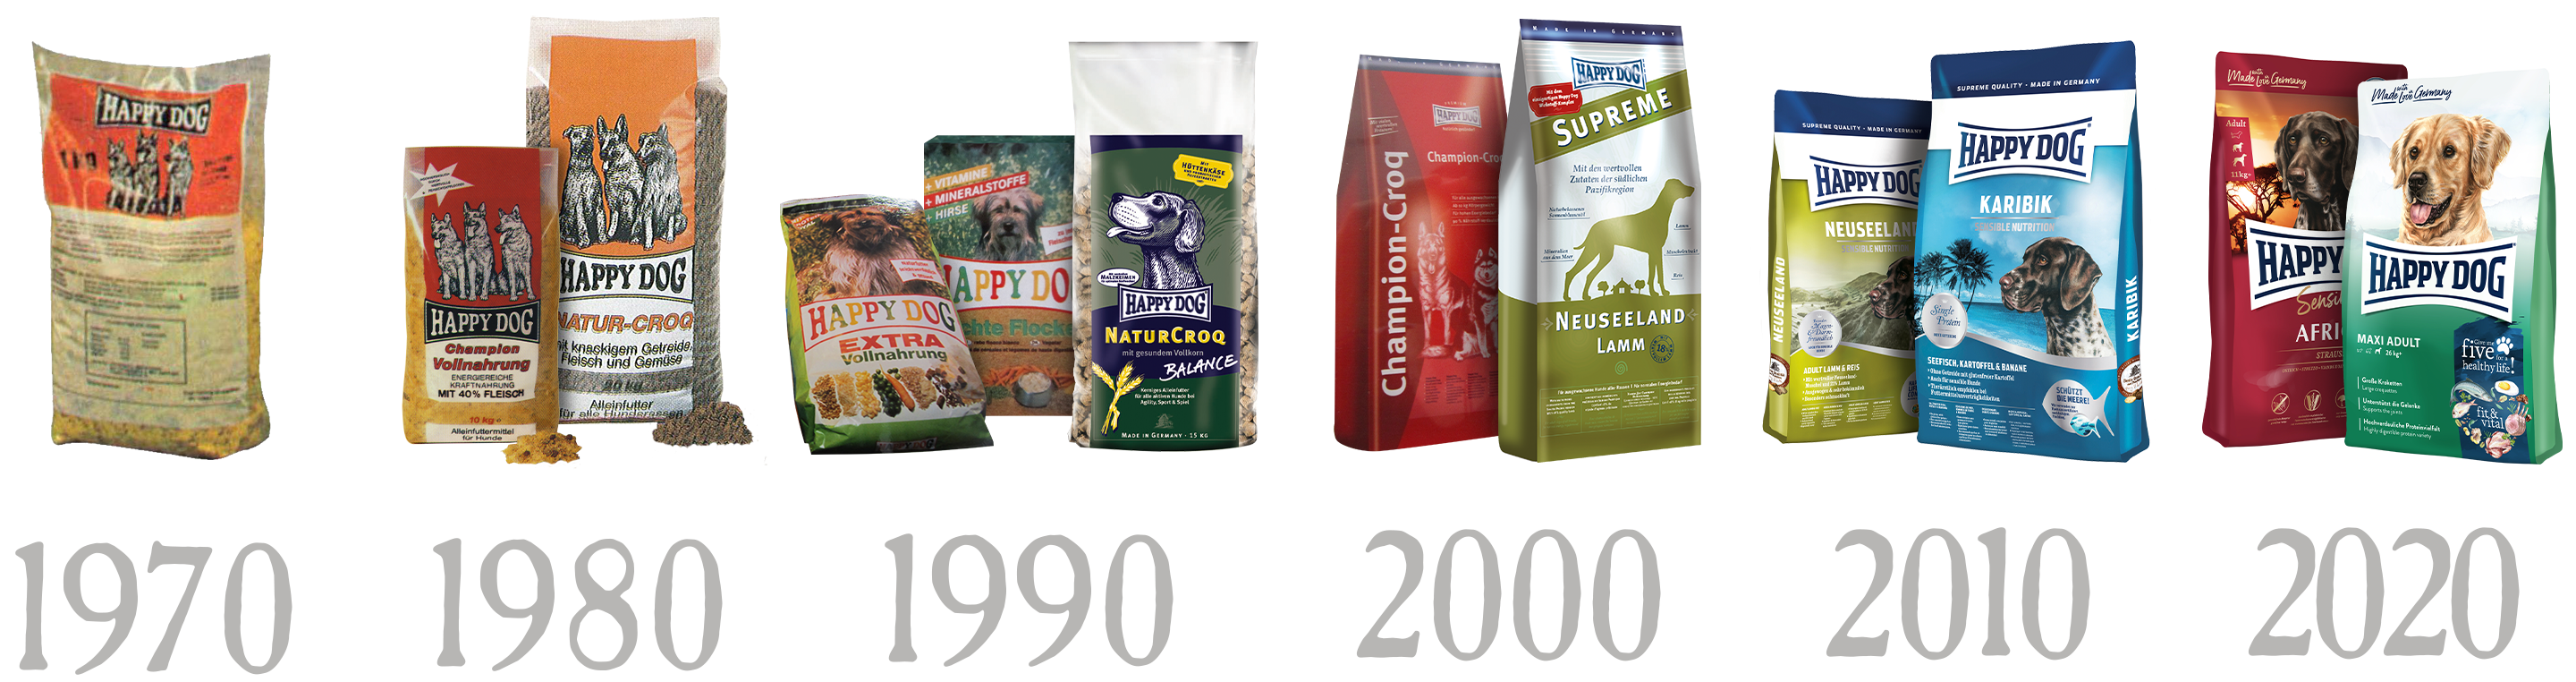 Die Happy Dog Futterverpackungen von 1970 bis 2020 im Vergleich